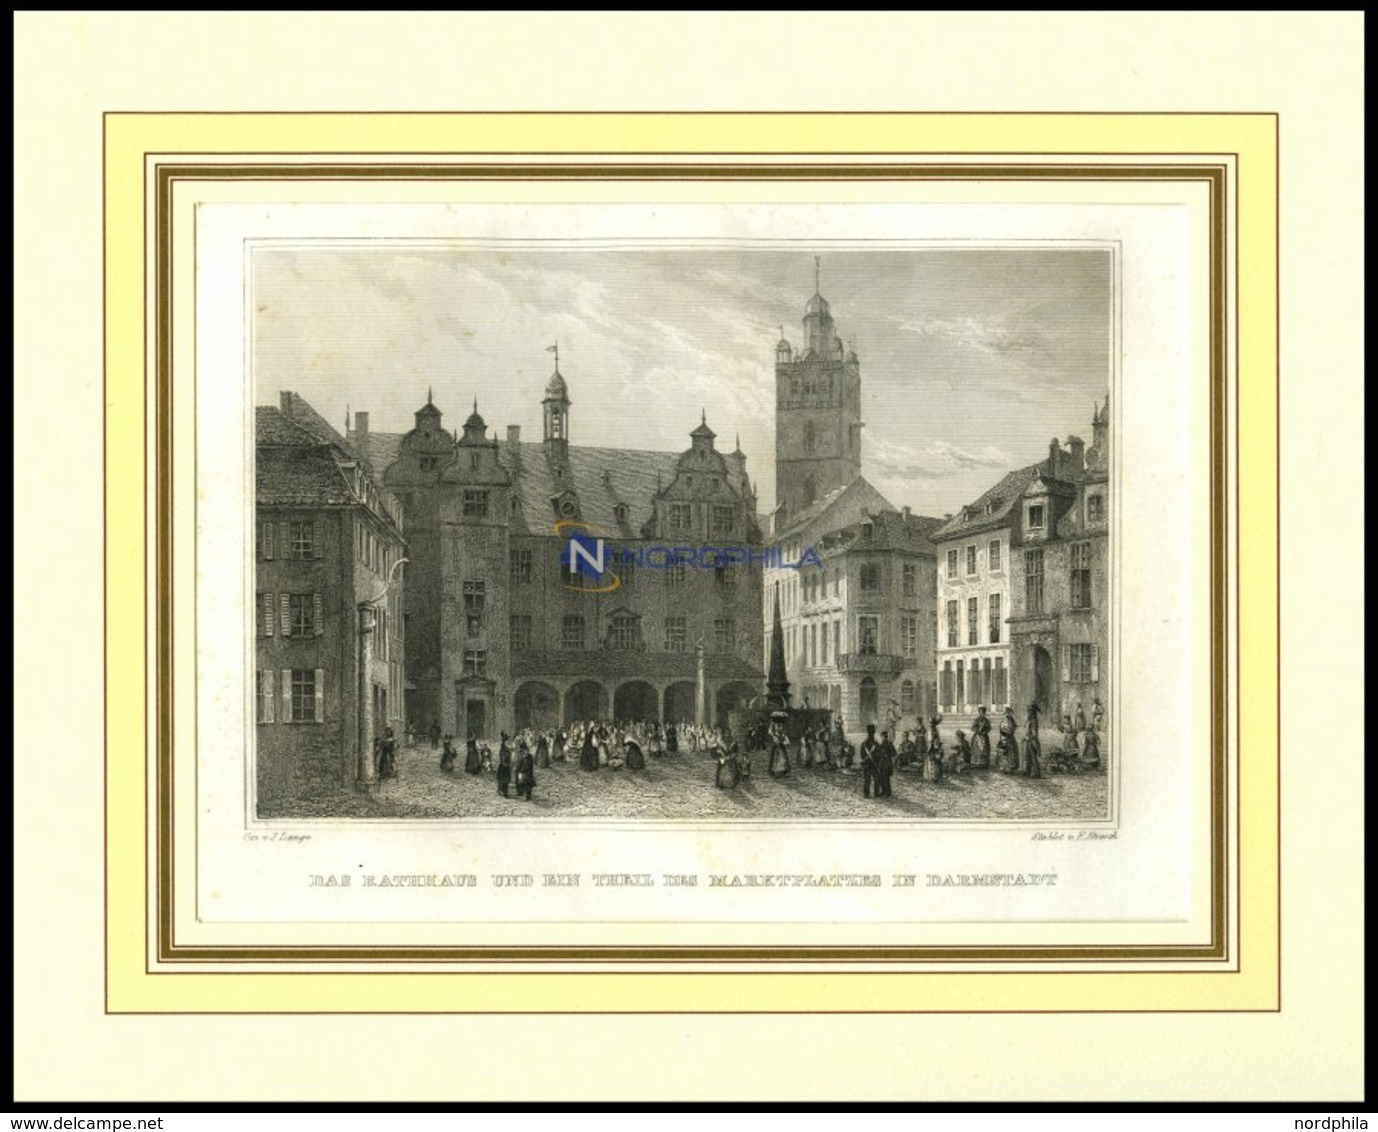 DARMSTADT: Das Rathaus Und Ein Teil Des Marktplatzes, Stahlstich Von Lange/Abresch, 1840 - Litografia